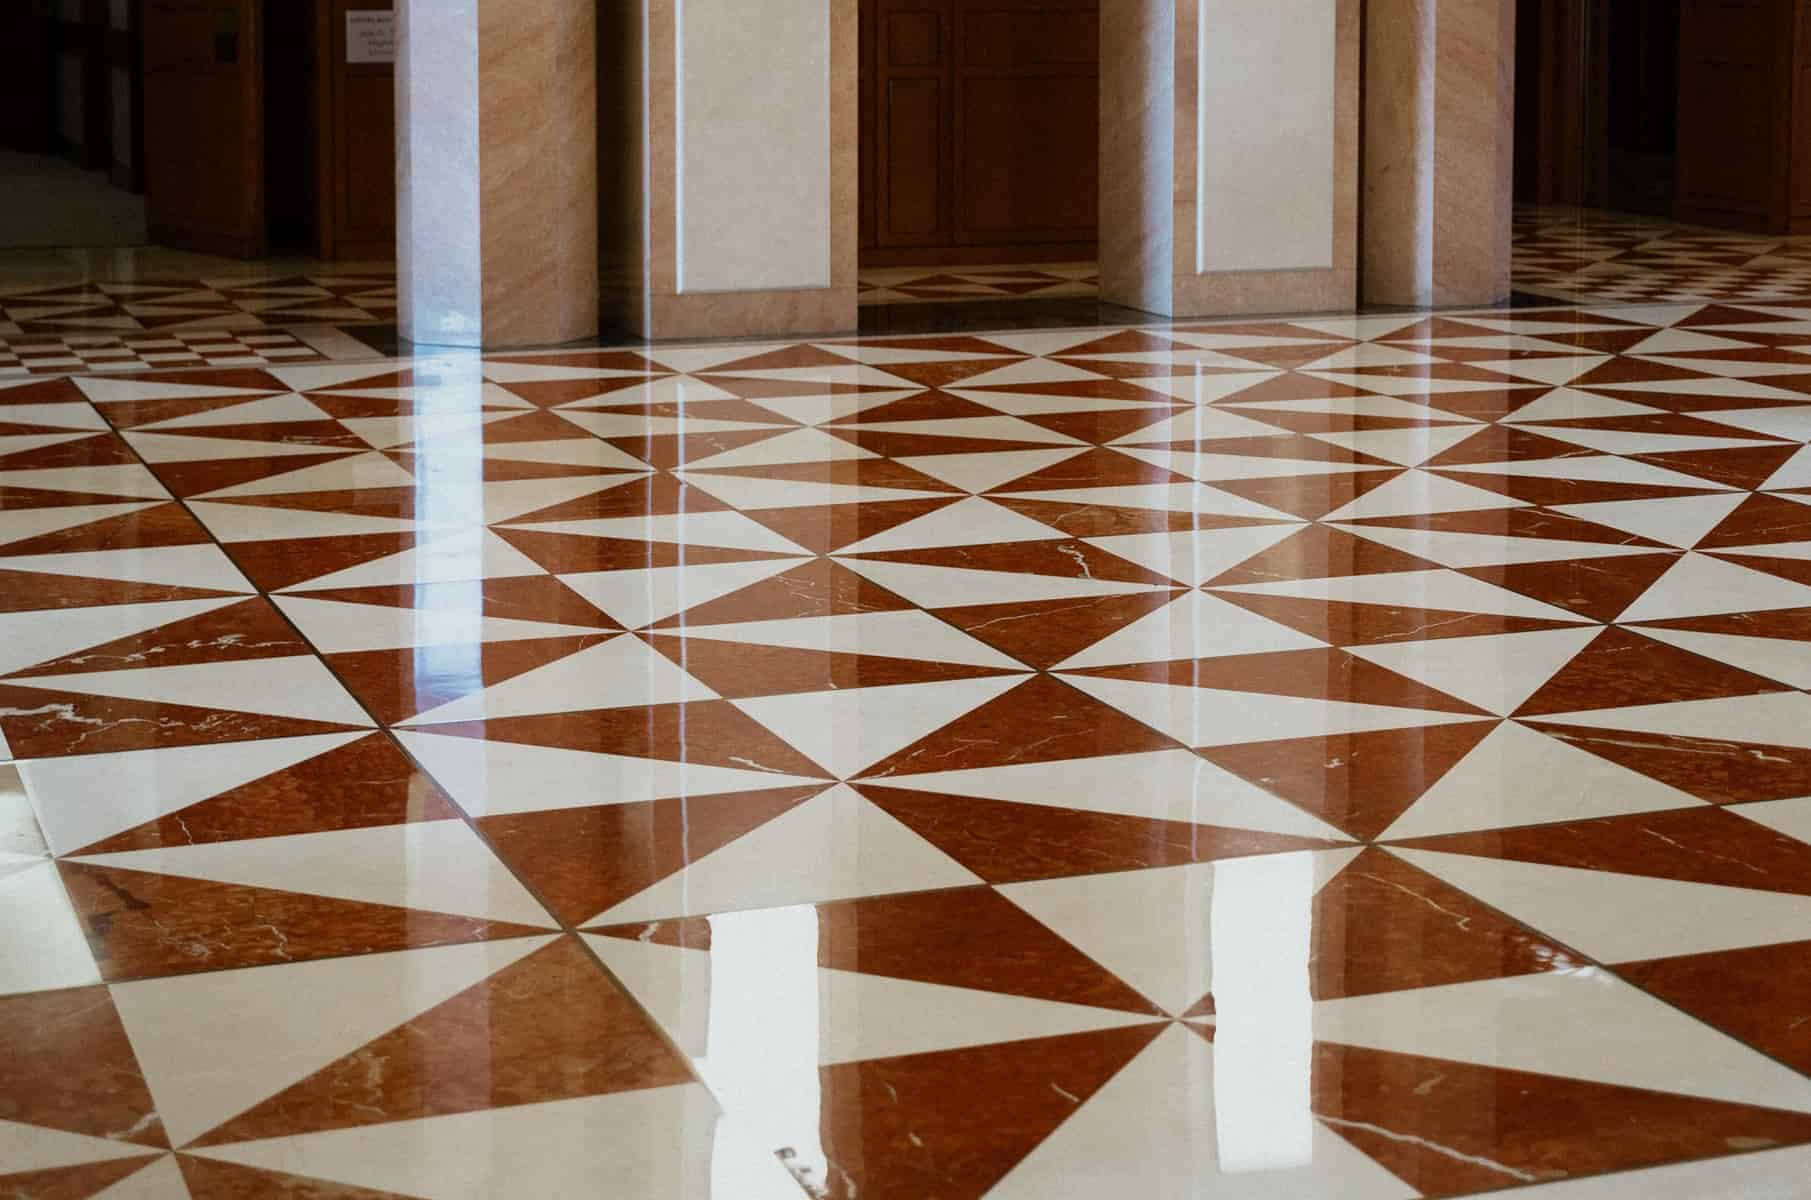 Marble Floor Design